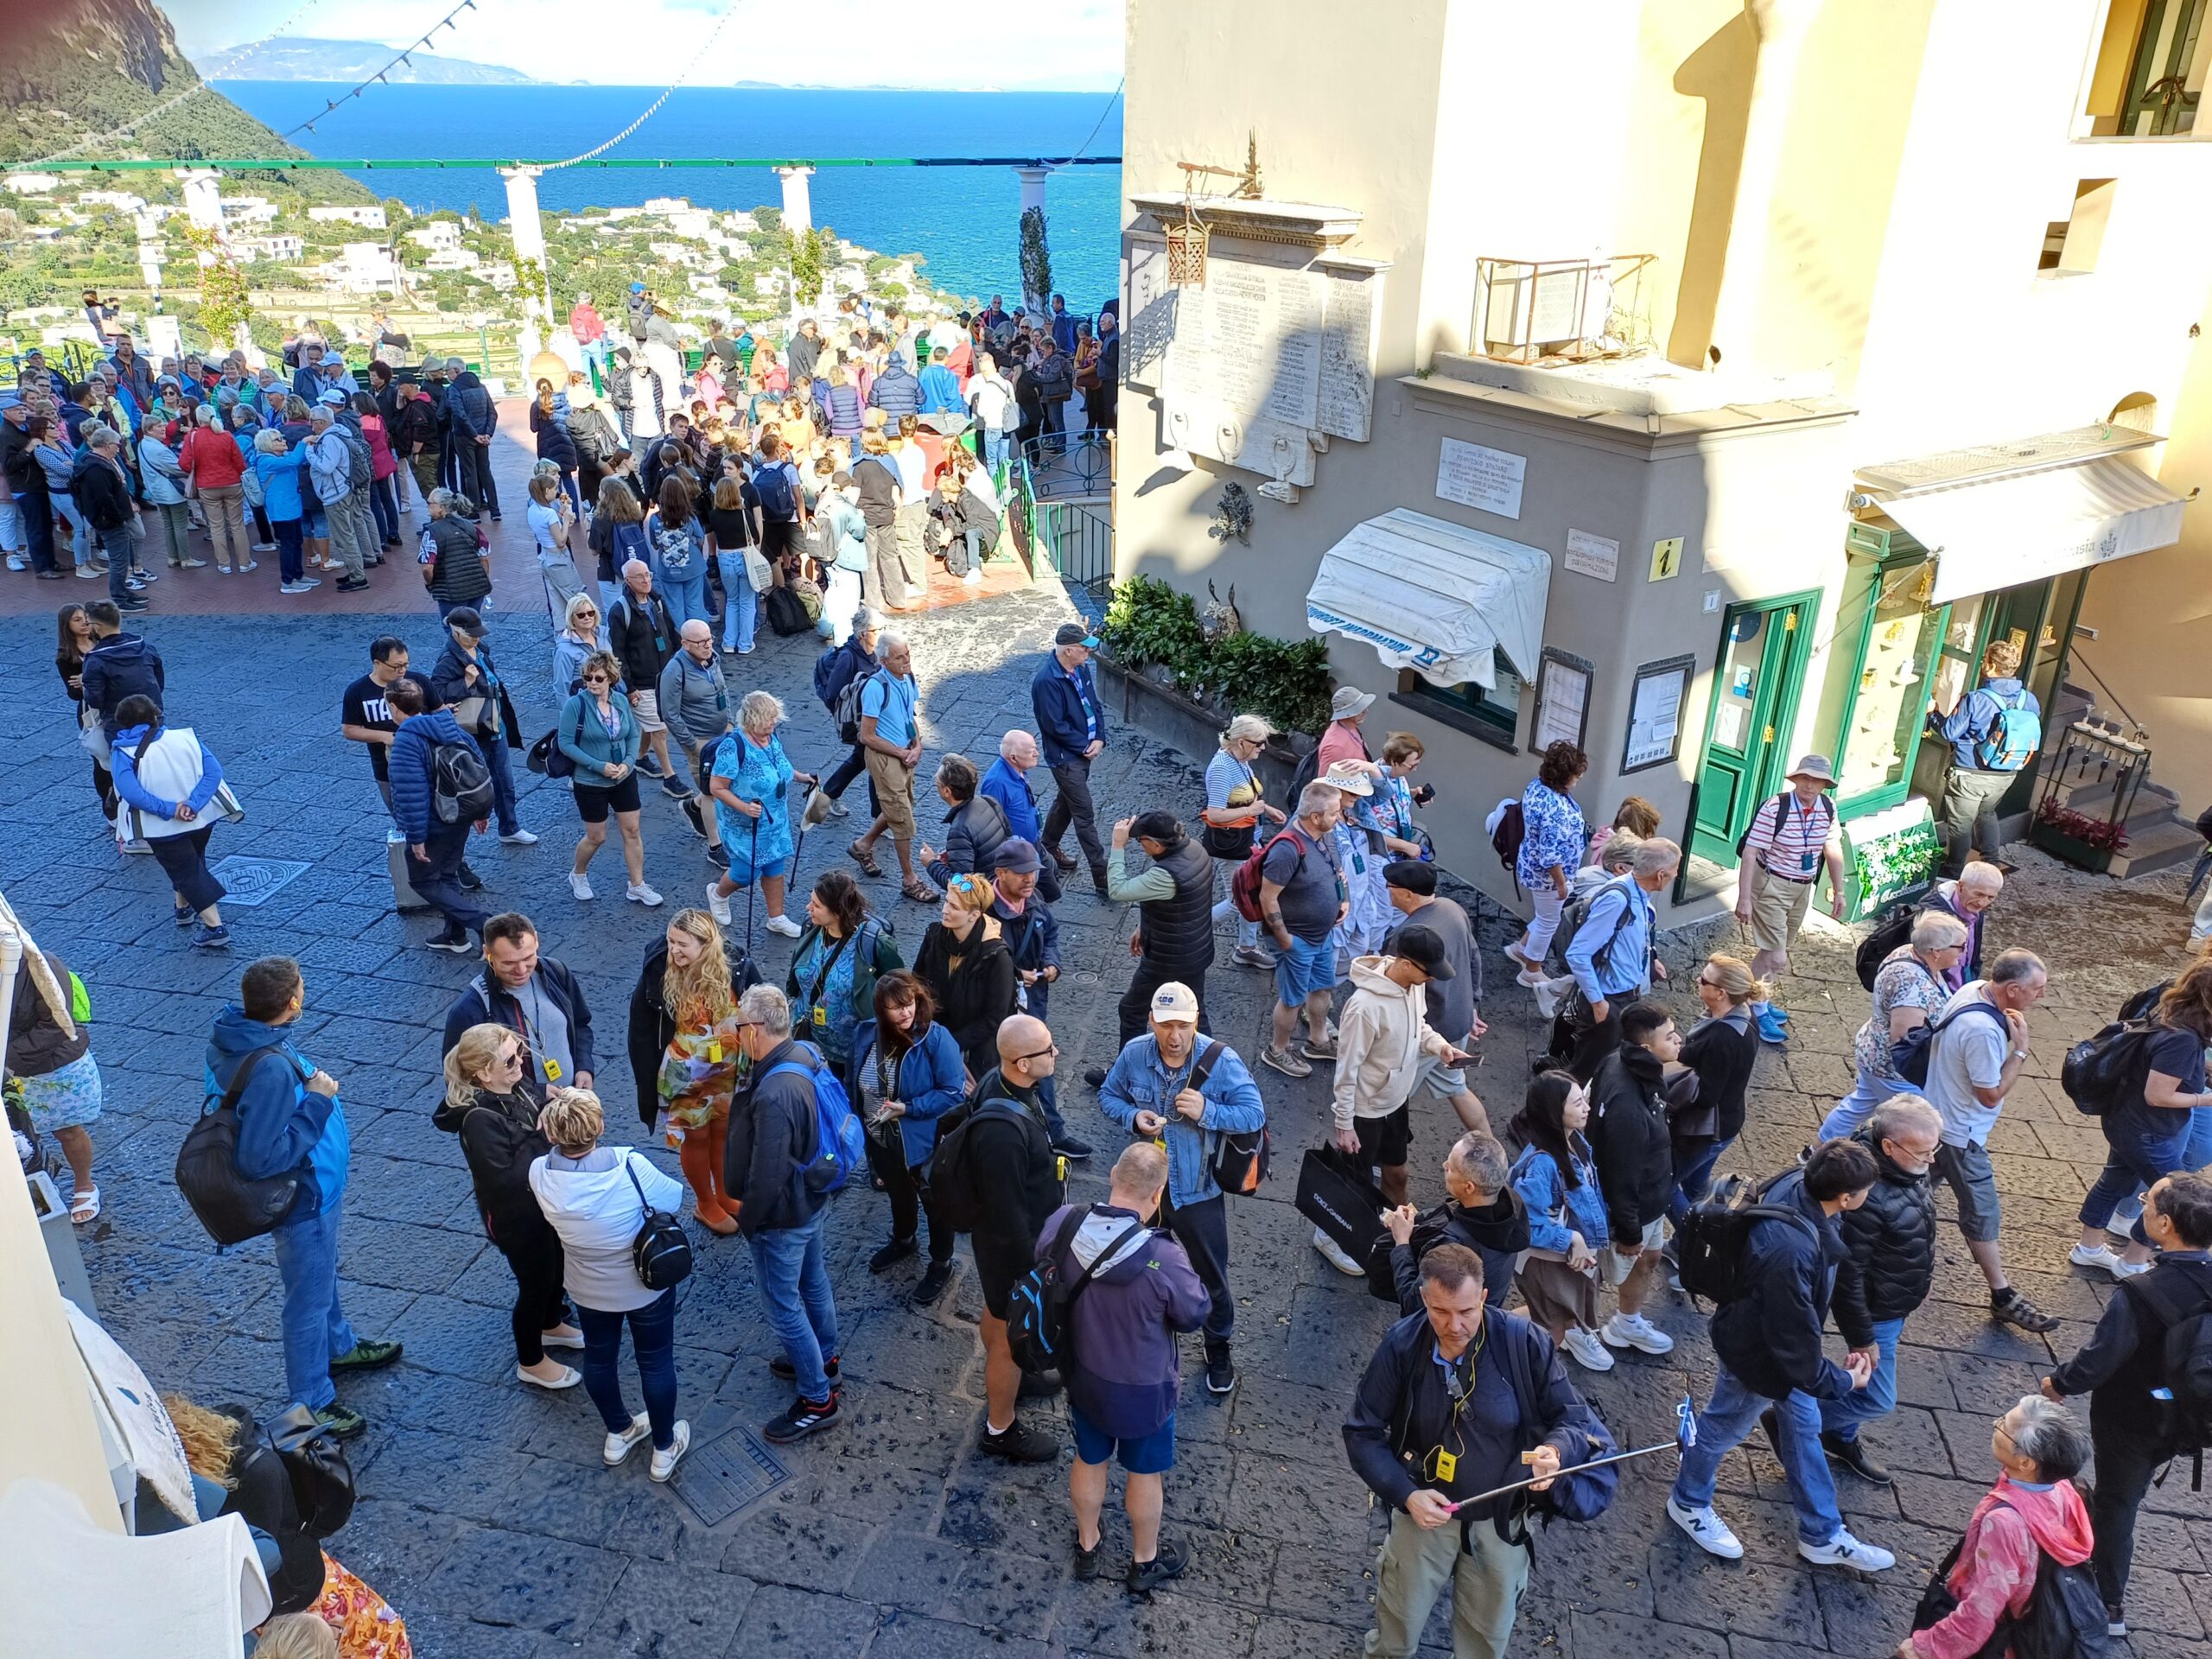 Turismo: continua anche in ottobre inoltrato la stagione record di arrivi per Capri (photogallery)